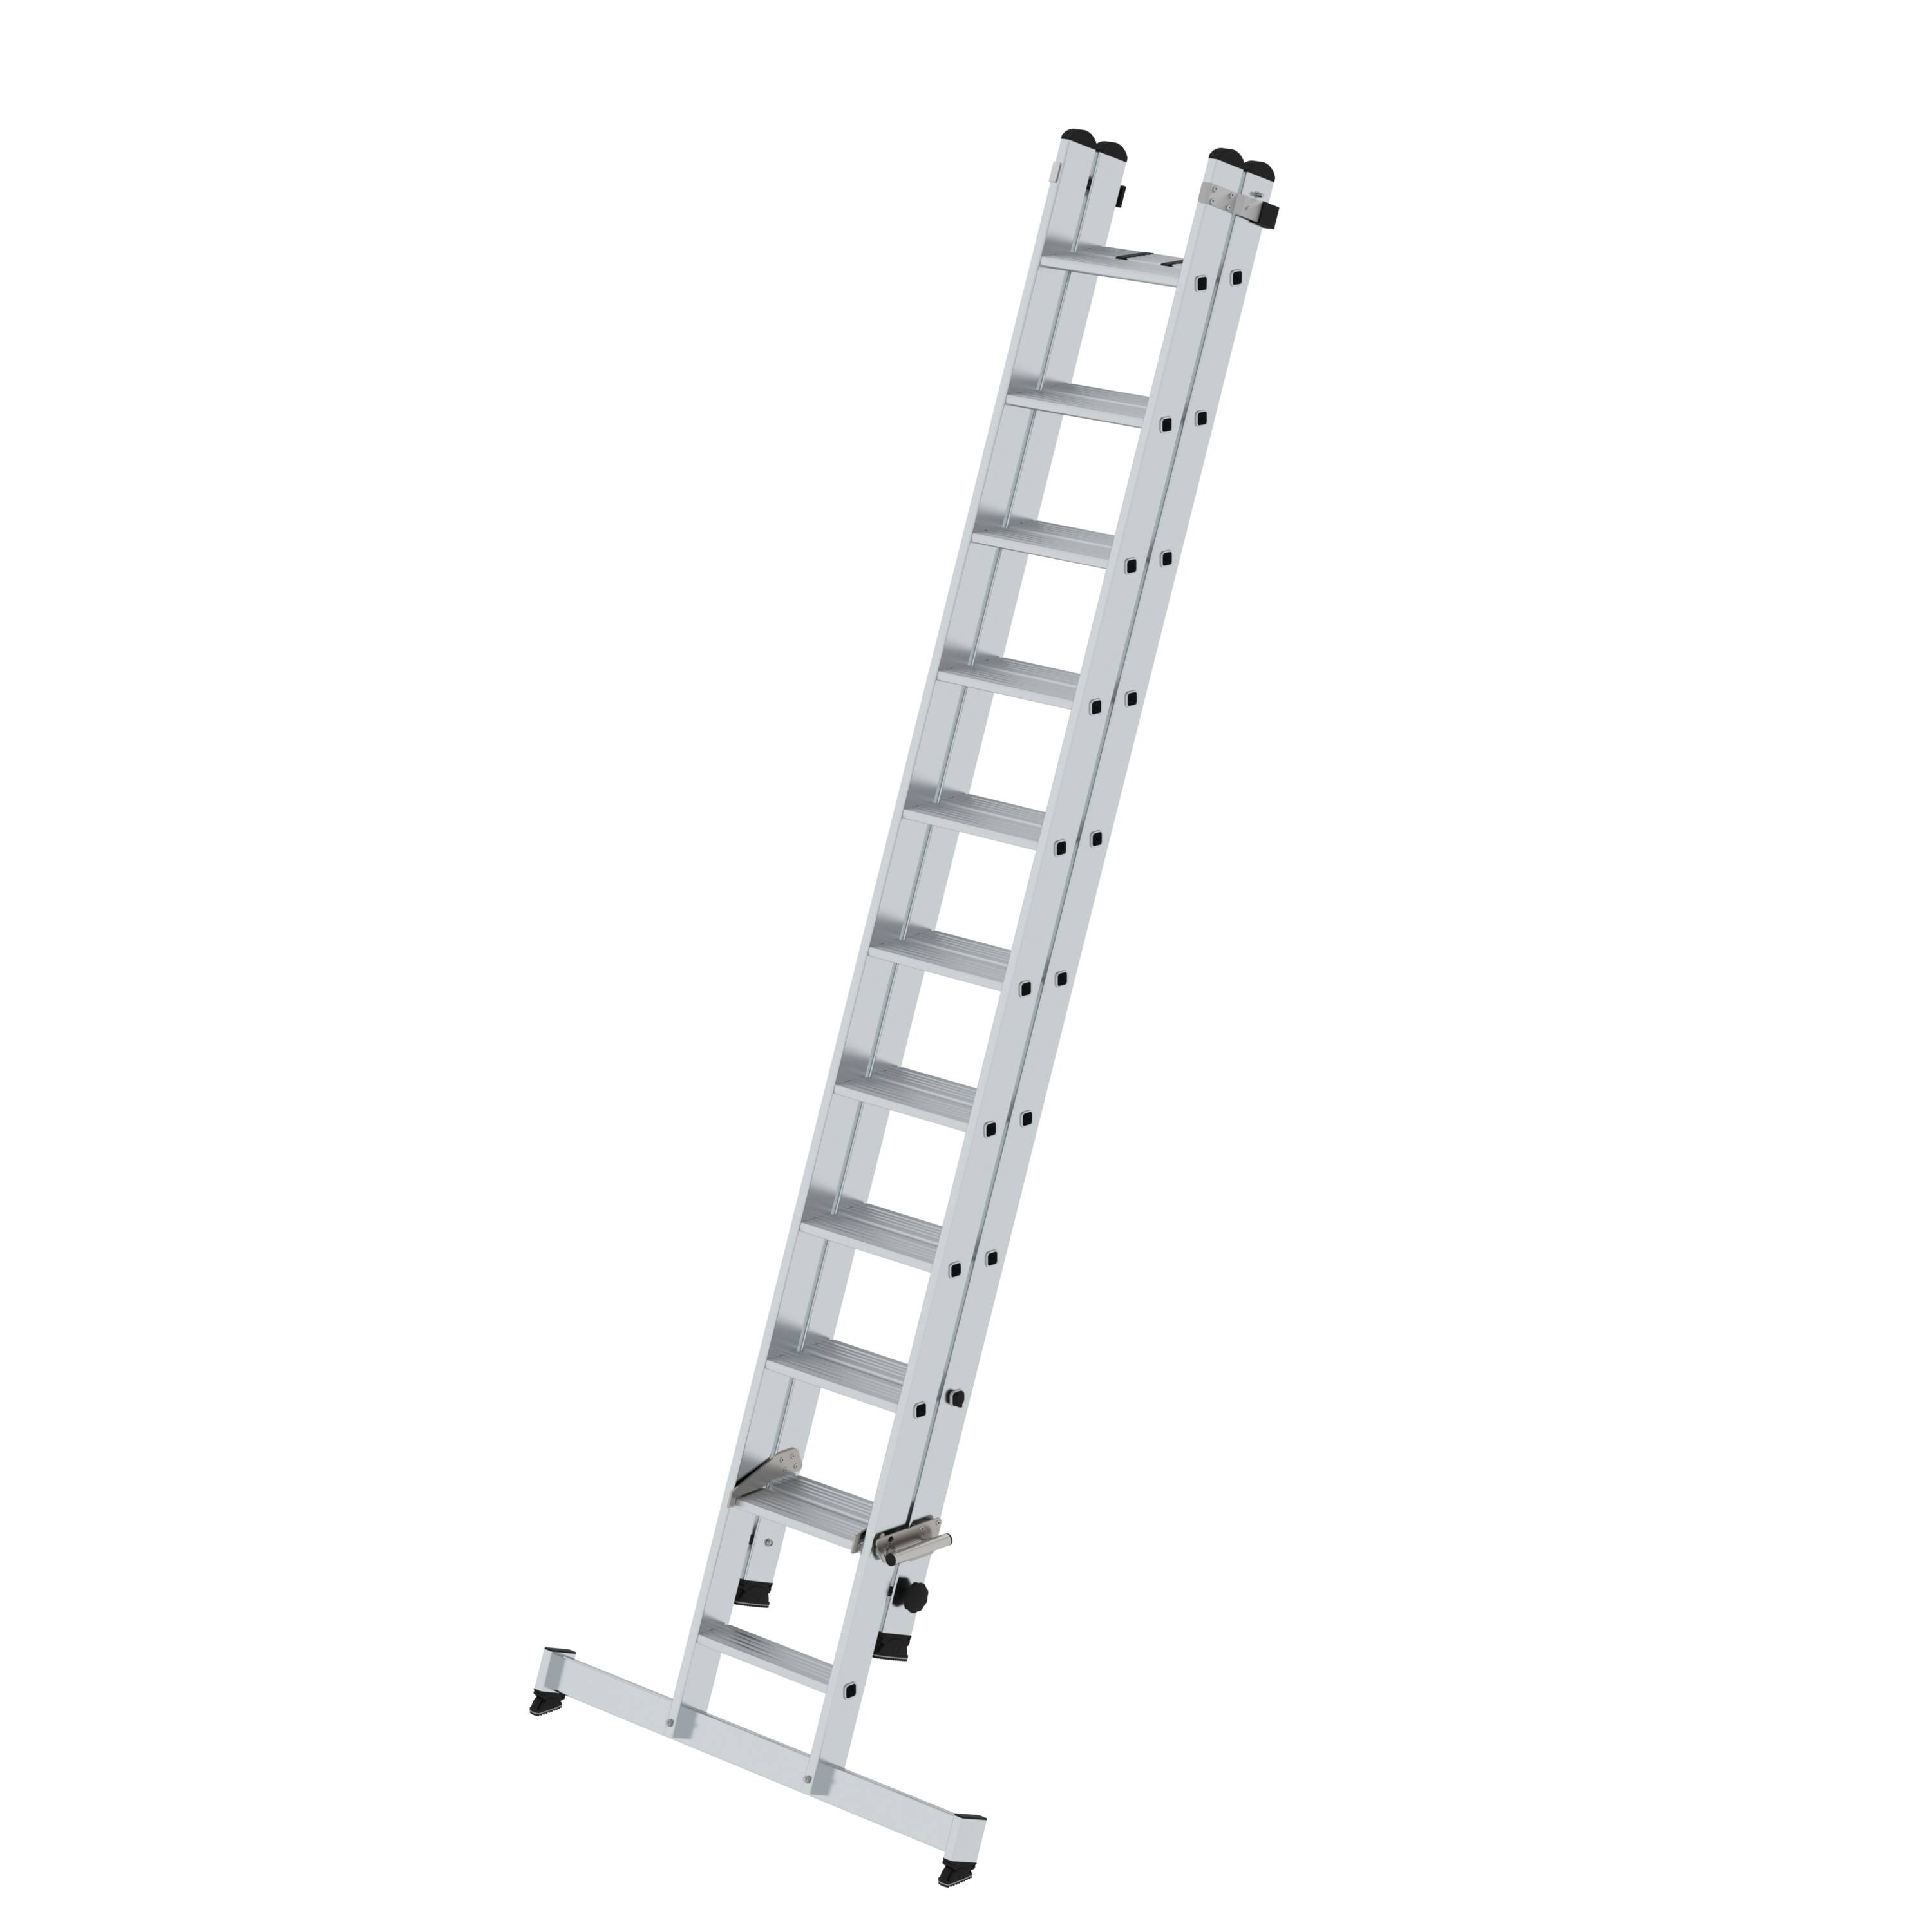 MUNK Stufen-Schiebeleiter 2-teilig mit nivello®-Traverse  